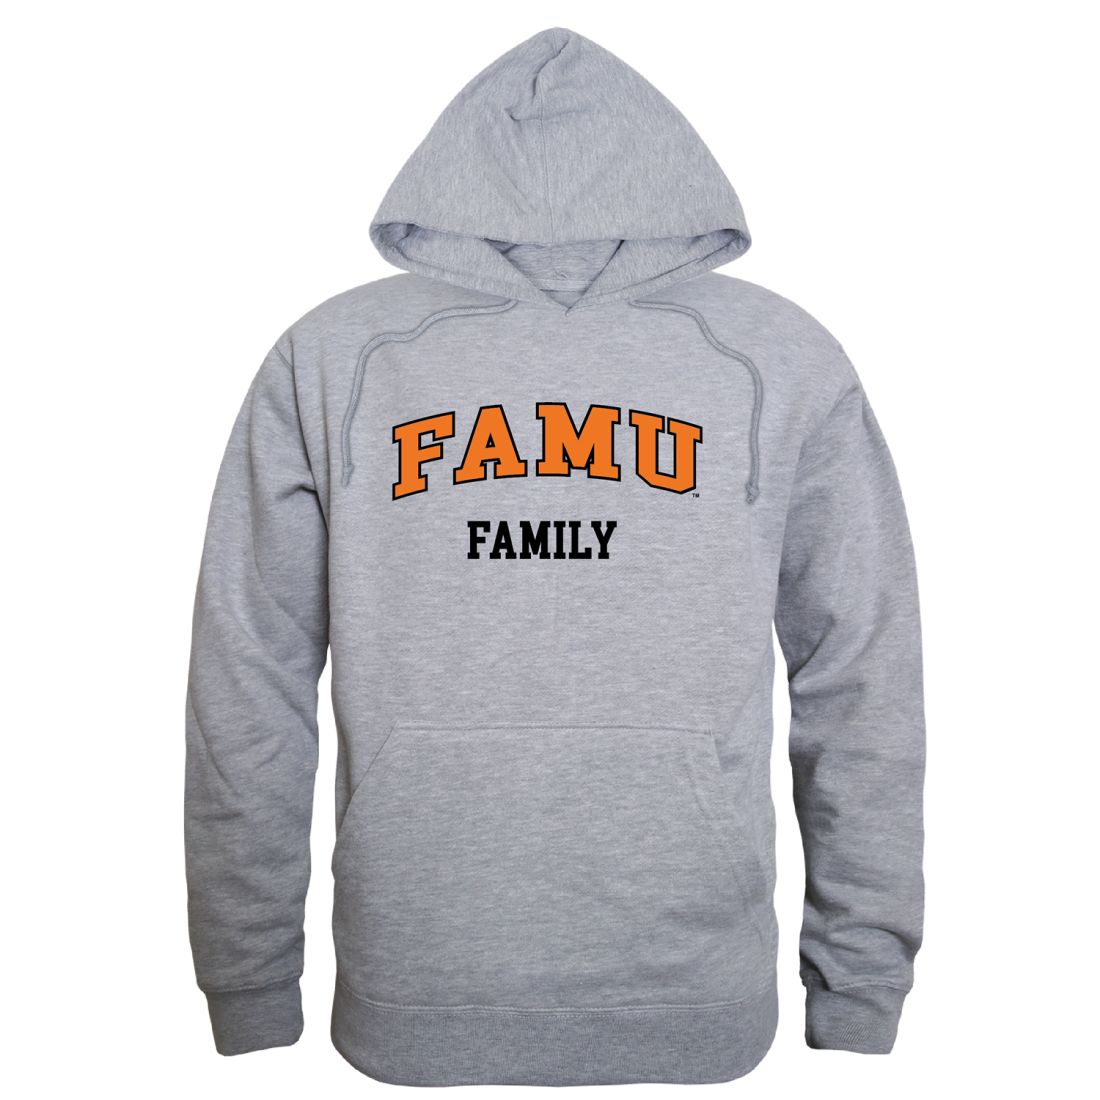 FAMU Florida A&M University Rattlers Family Hoodie Sweatshirts